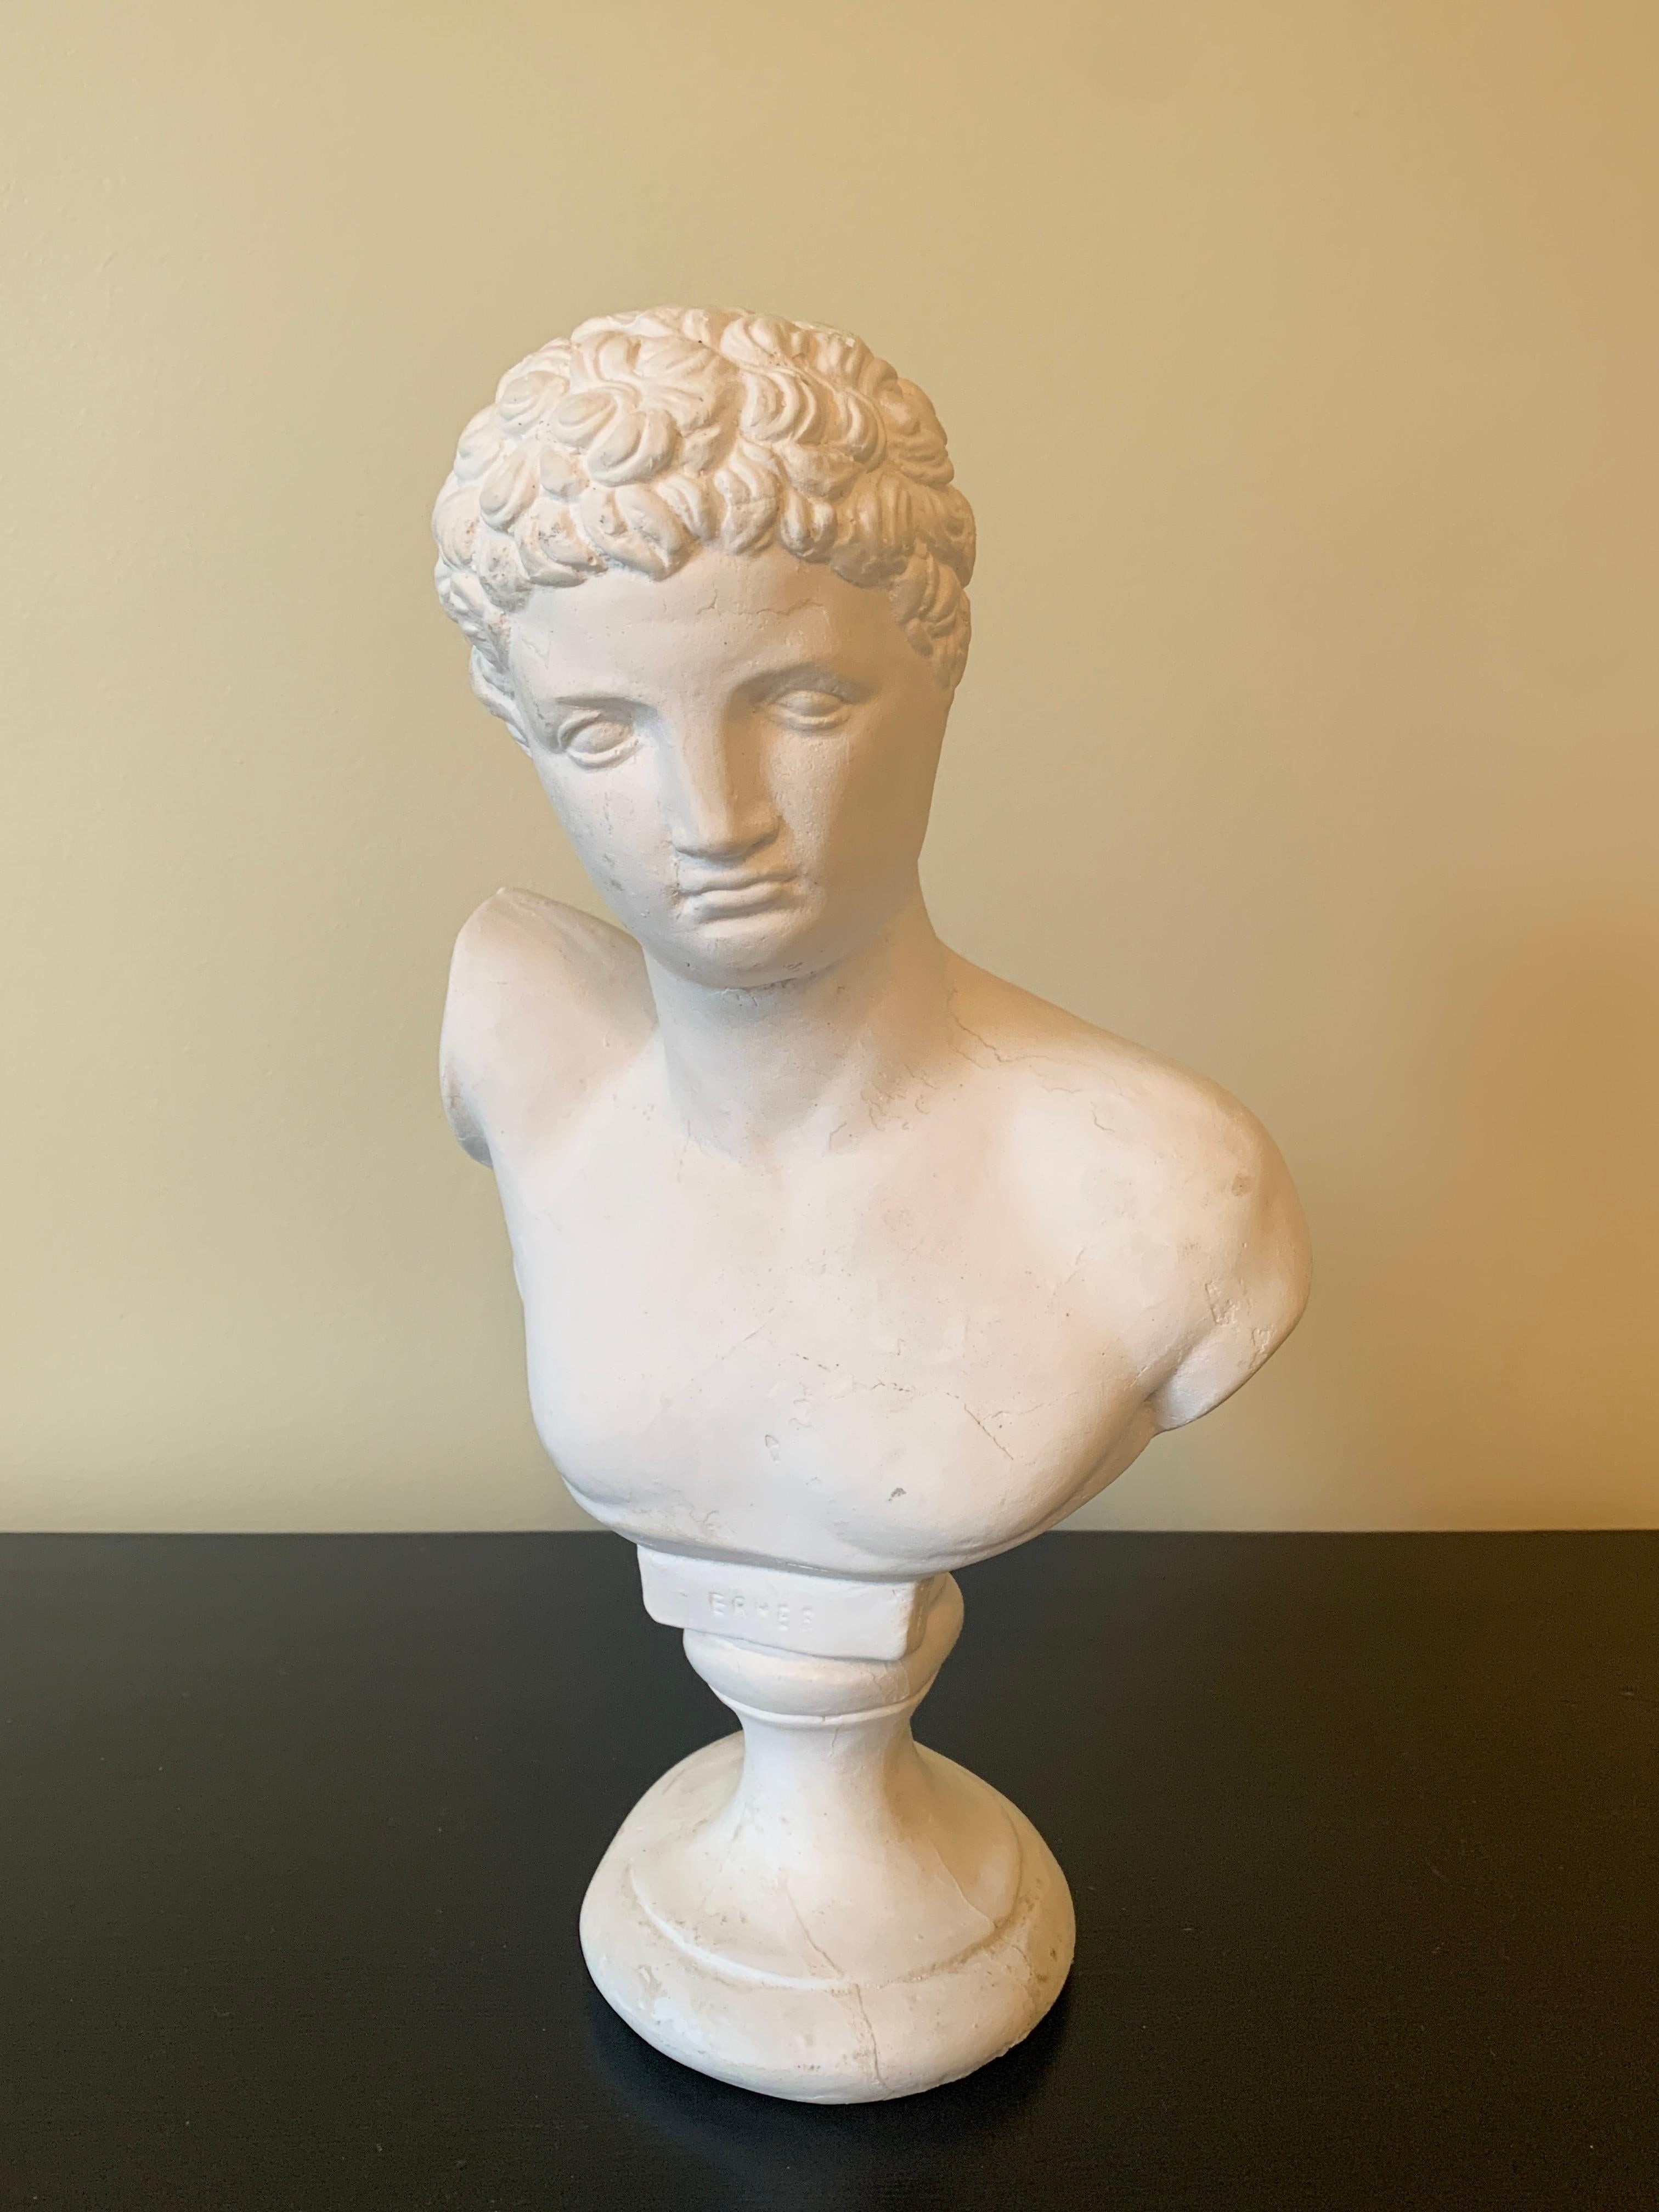 Eine wunderschöne Gipsbüste im neoklassizistischen Grand-Tour-Stil mit männlichem Kopf von Hermes

USA, Ende des 20. Jahrhunderts

Maße: 8 